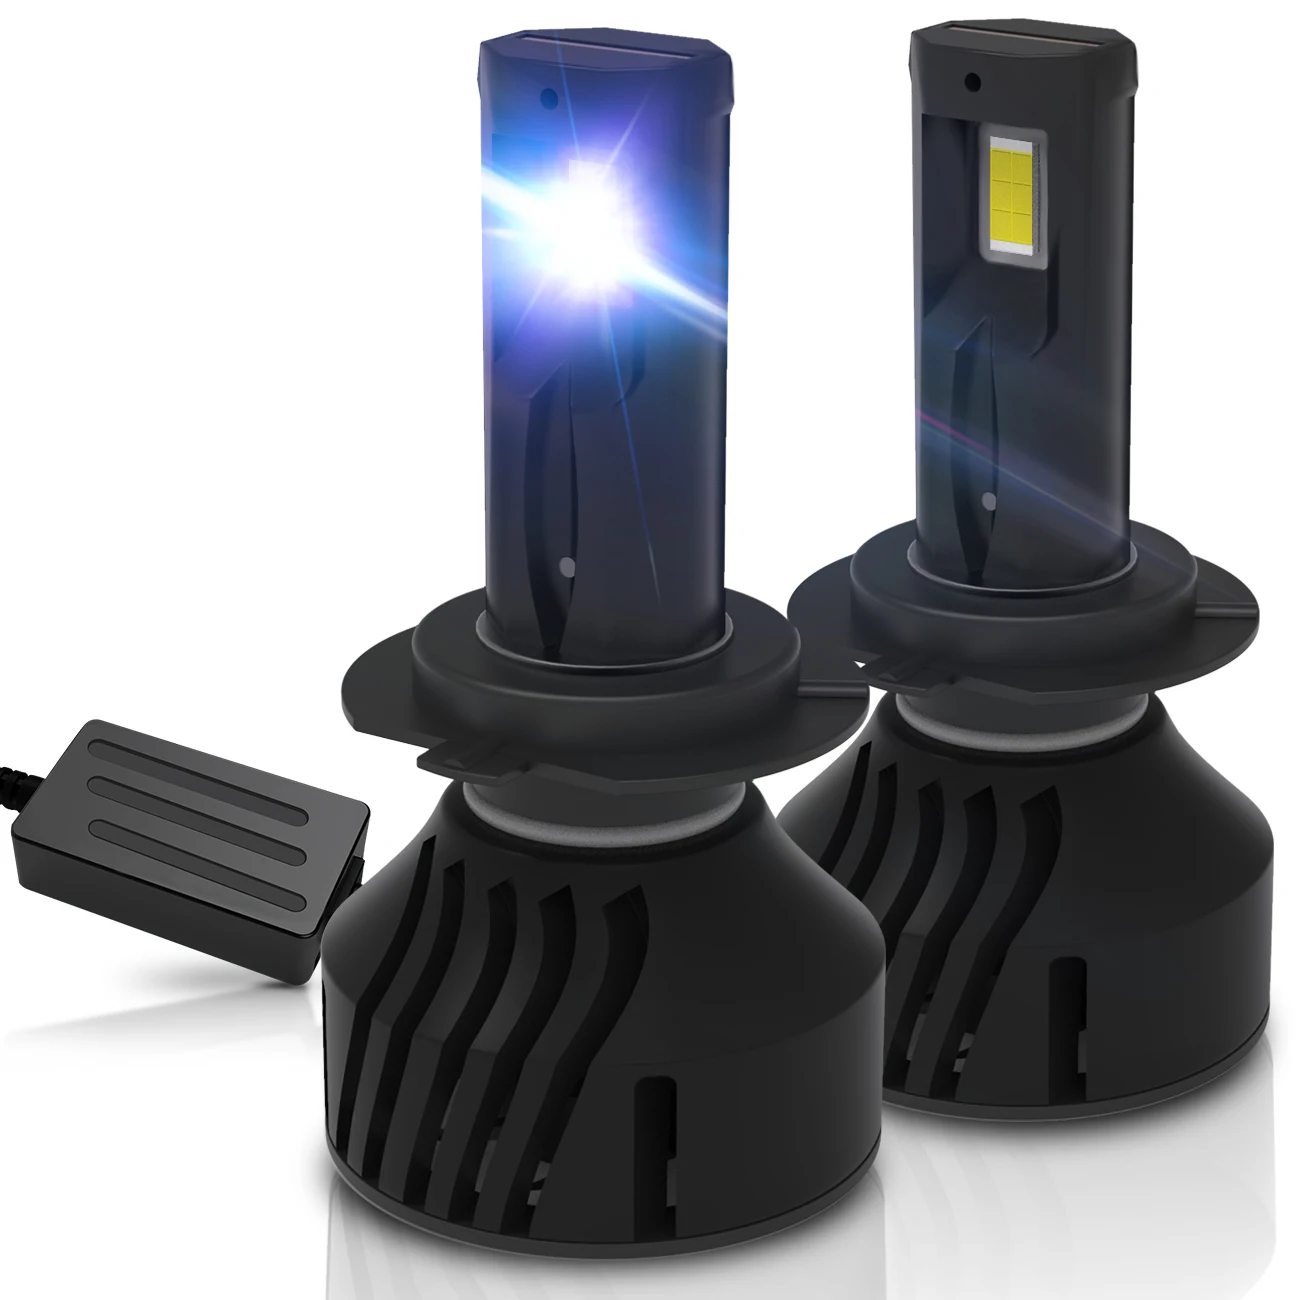 

2Pcs LED Car Headlight H7 H4 Hi/Lo Beam H1 H3 H8 H9 H11 H13 9005 9006 9007 120W 30000lm 6500K Auto Headlamp Fog Light Bulbs